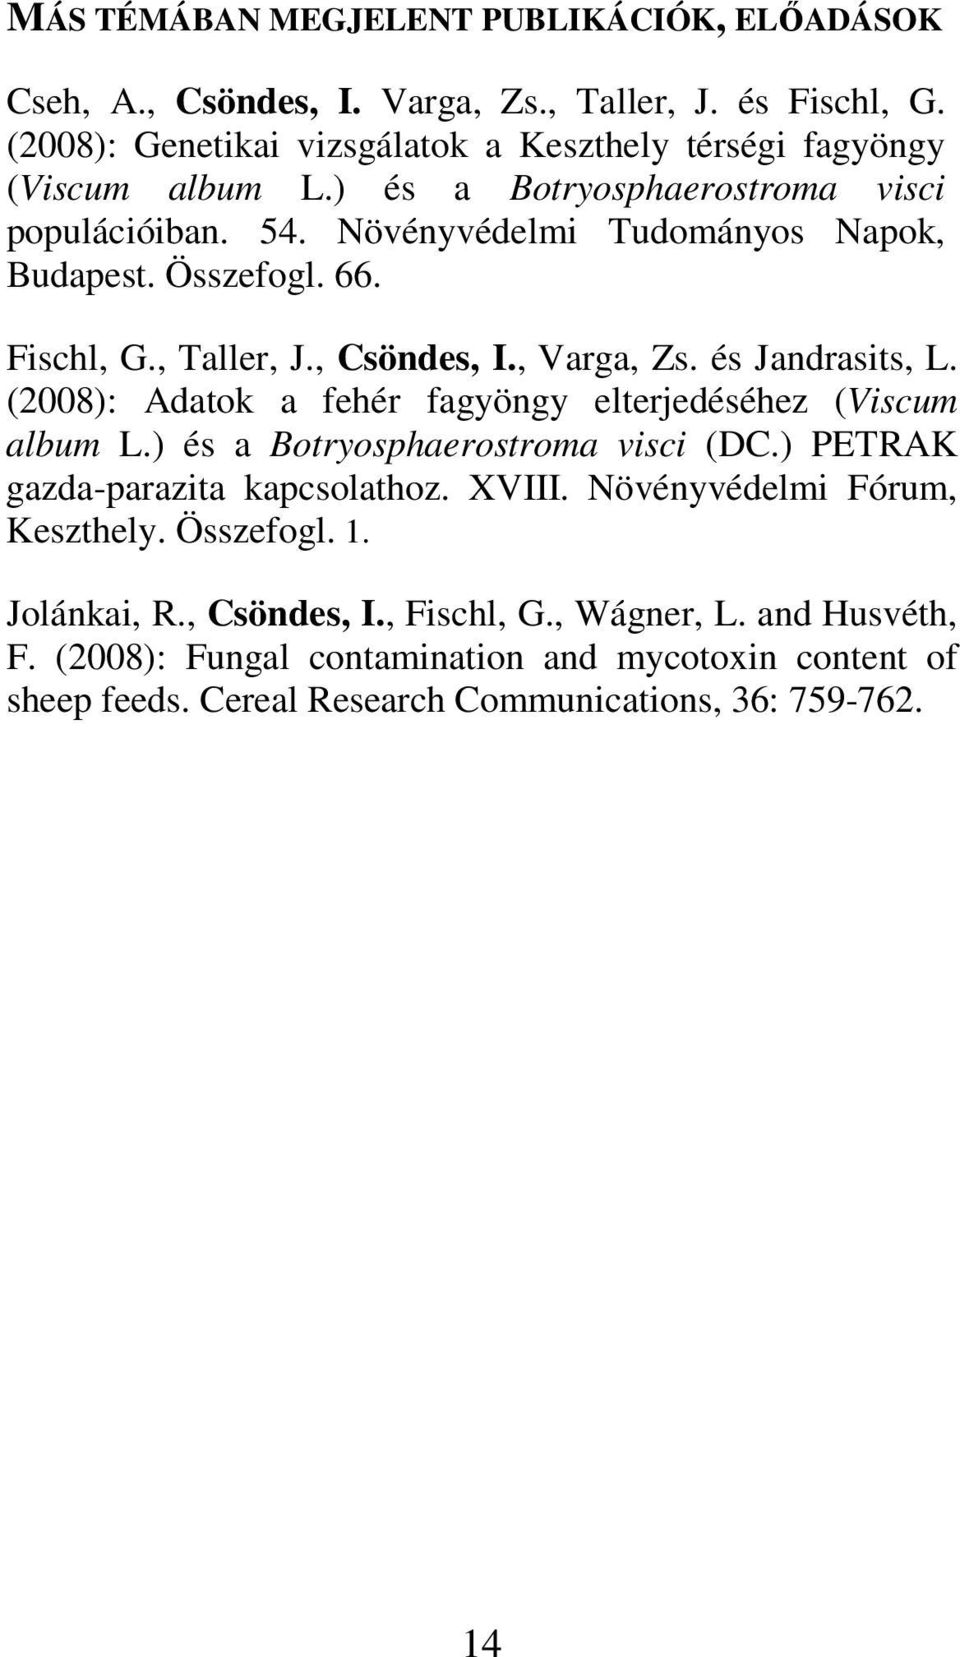 (2008): Adatok a fehér fagyöngy elterjedéséhez (Viscum album L.) és a Botryosphaerostroma visci (DC.) PETRAK gazda-parazita kapcsolathoz. XVIII. Növényvédelmi Fórum, Keszthely.